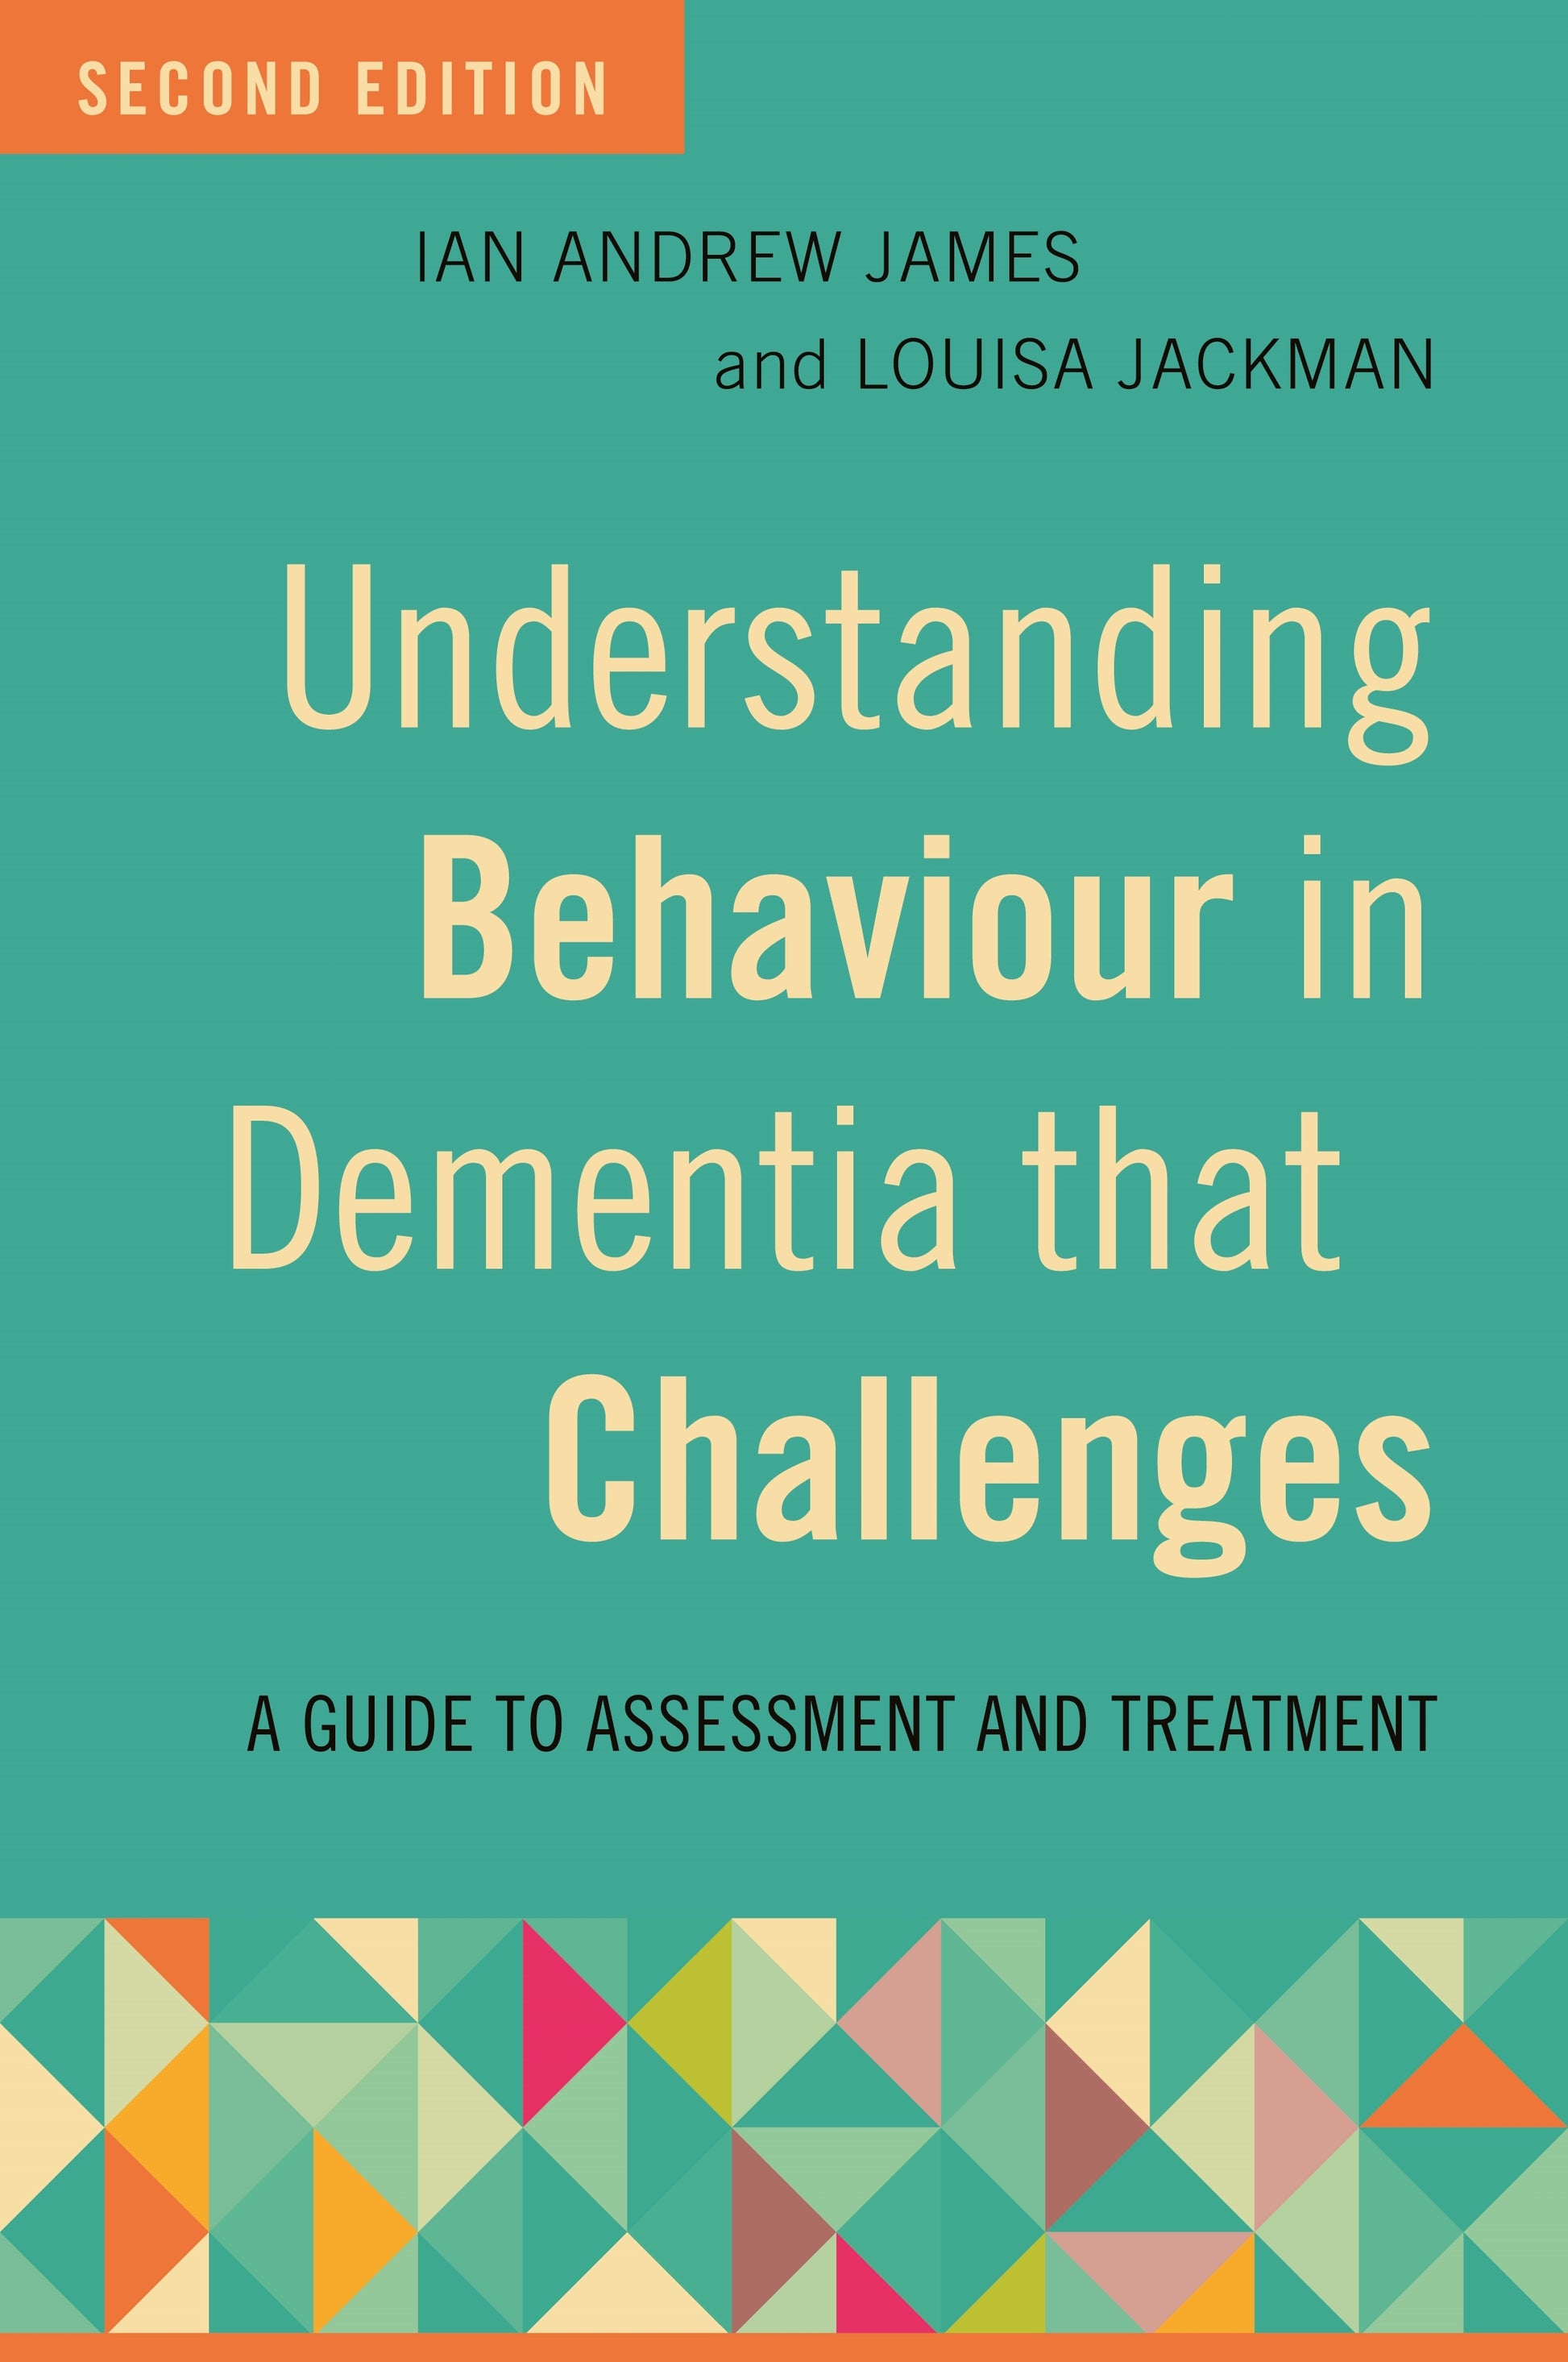 Understanding Behaviour in Dementia that Challenges, Second Edition by Ian Andrew James, Louisa Jackman